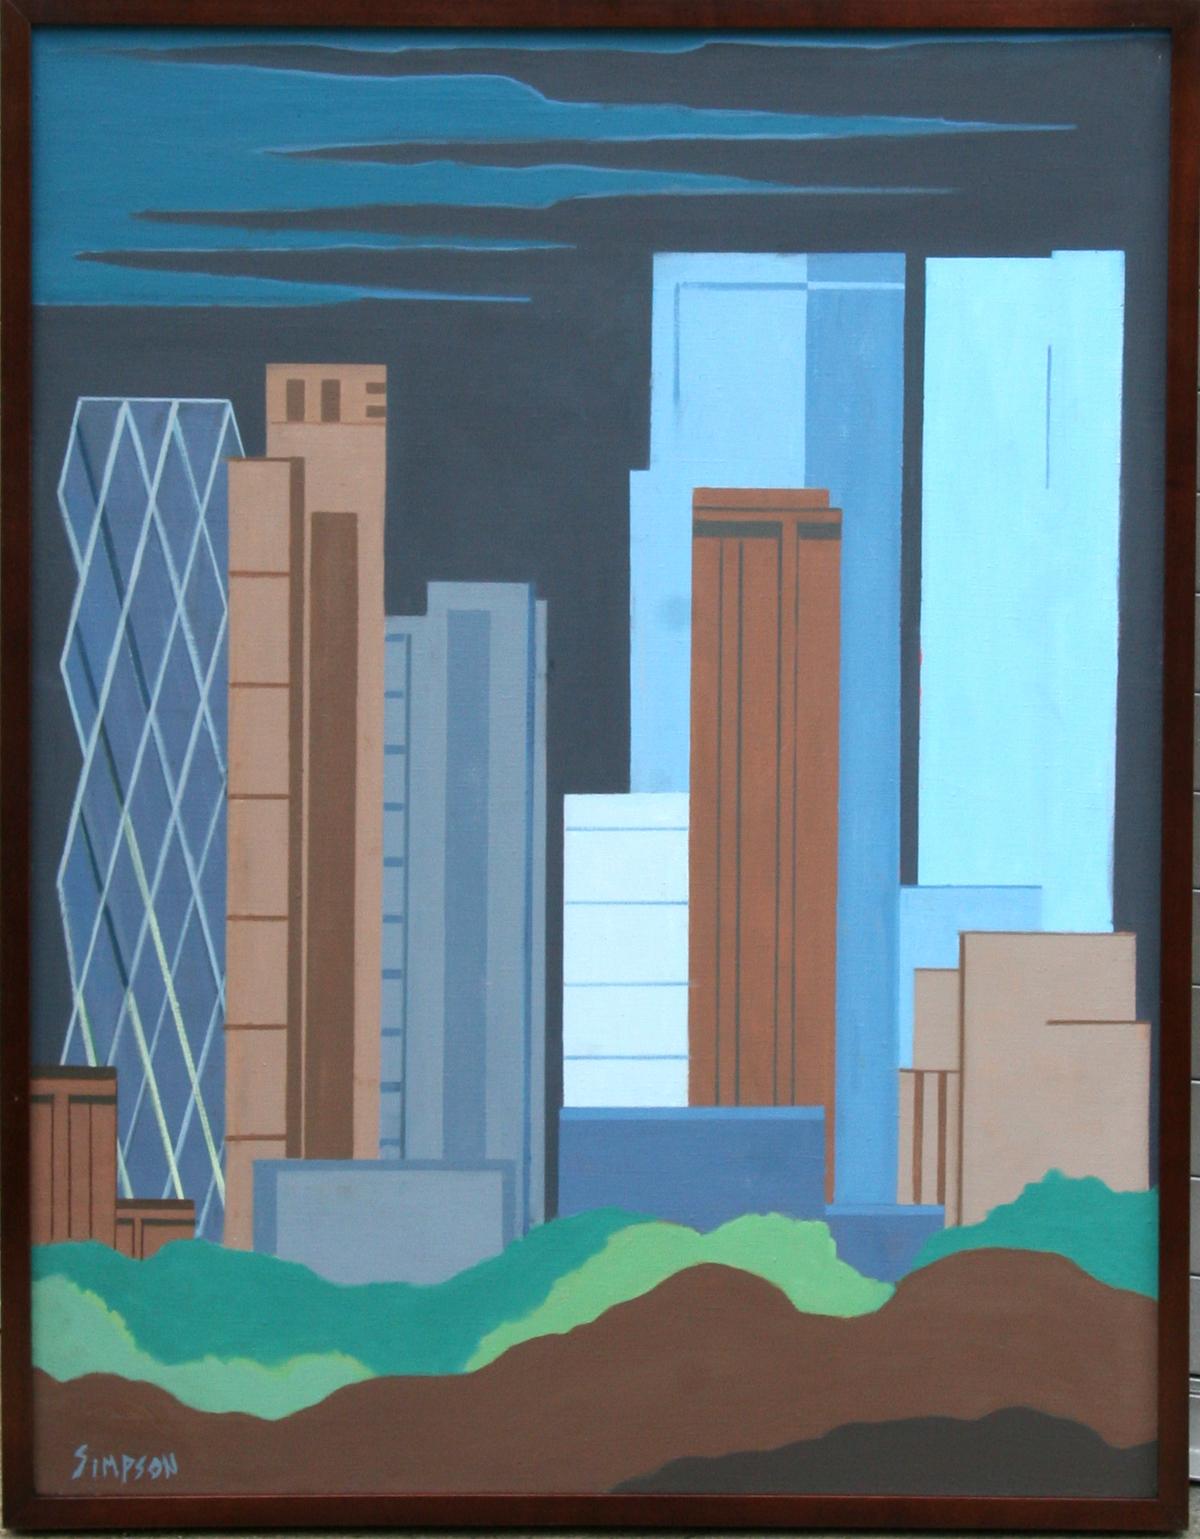 Künstler: Allan Simpson, Amerikaner (1935 - )
Titel: Innenstadt von New York City 
Jahr: ca. 1996
Medium: Öl auf Leinwand, signiert l.l. 
Größe: 39 in. x 30 in. (99,06 cm x 76,2 cm)